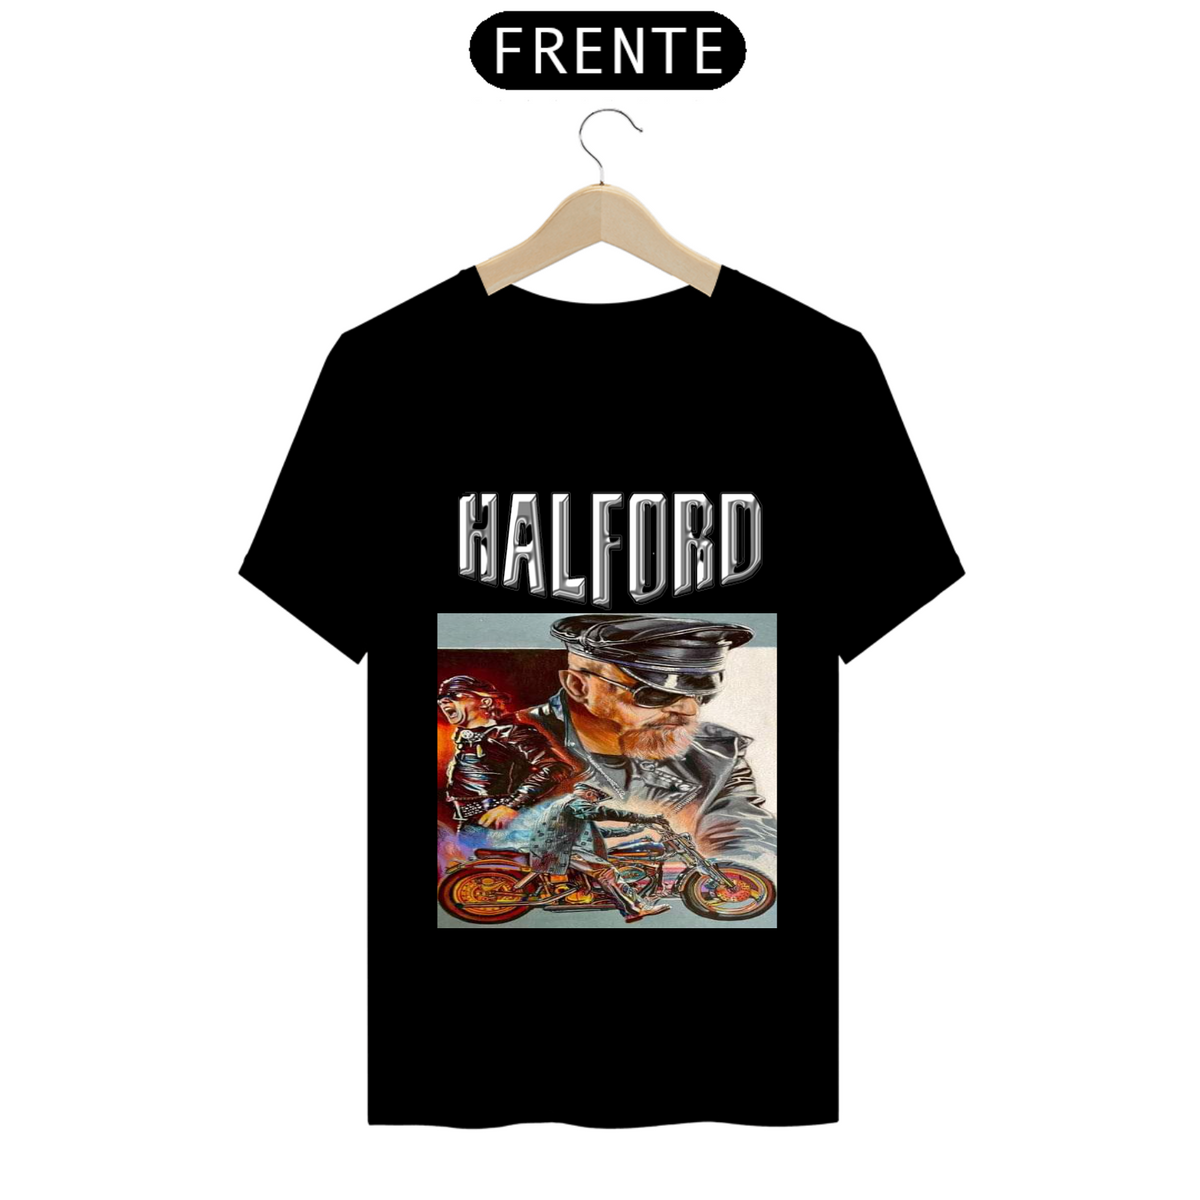 Nome do produto: Halford